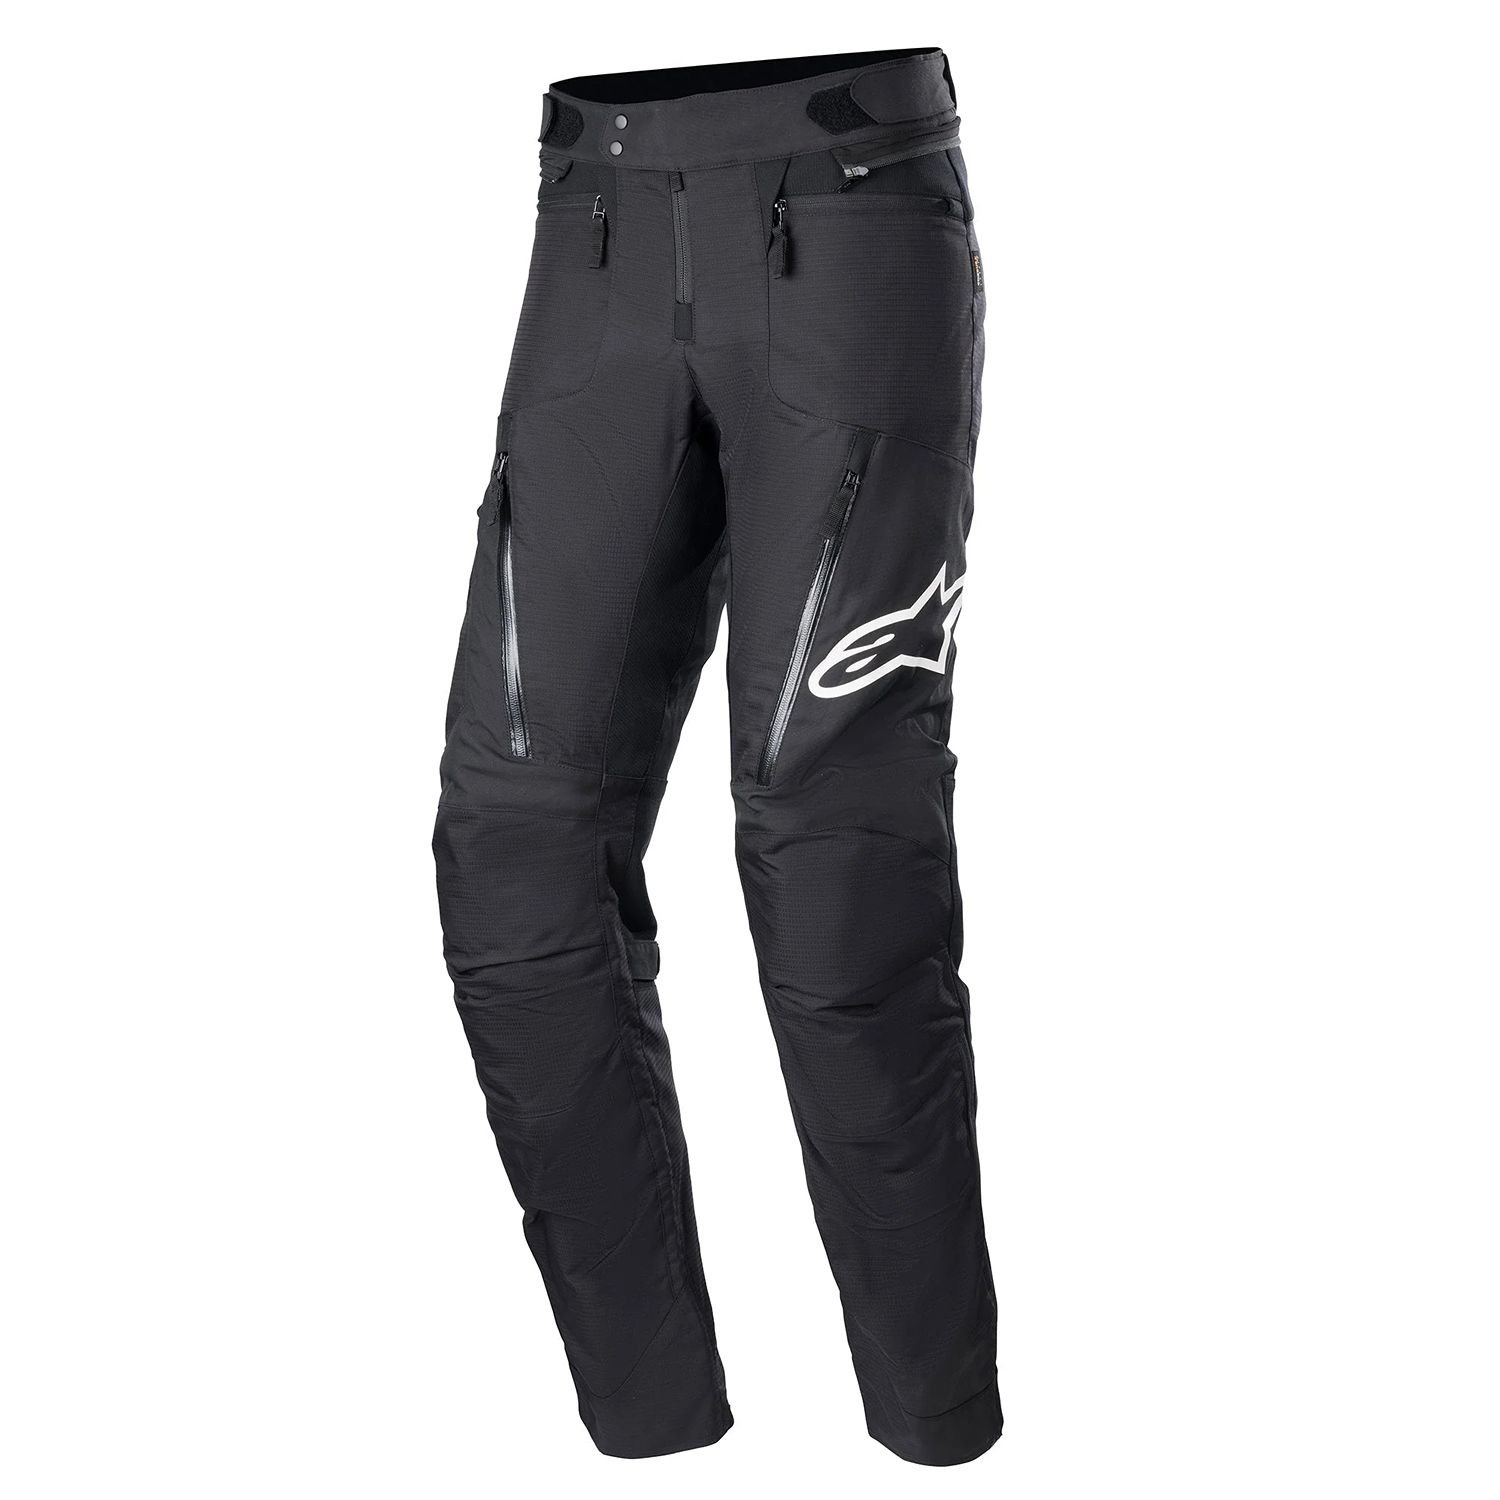 Image of Alpinestars Rx-3 Waterproof Pants Black Size L EN